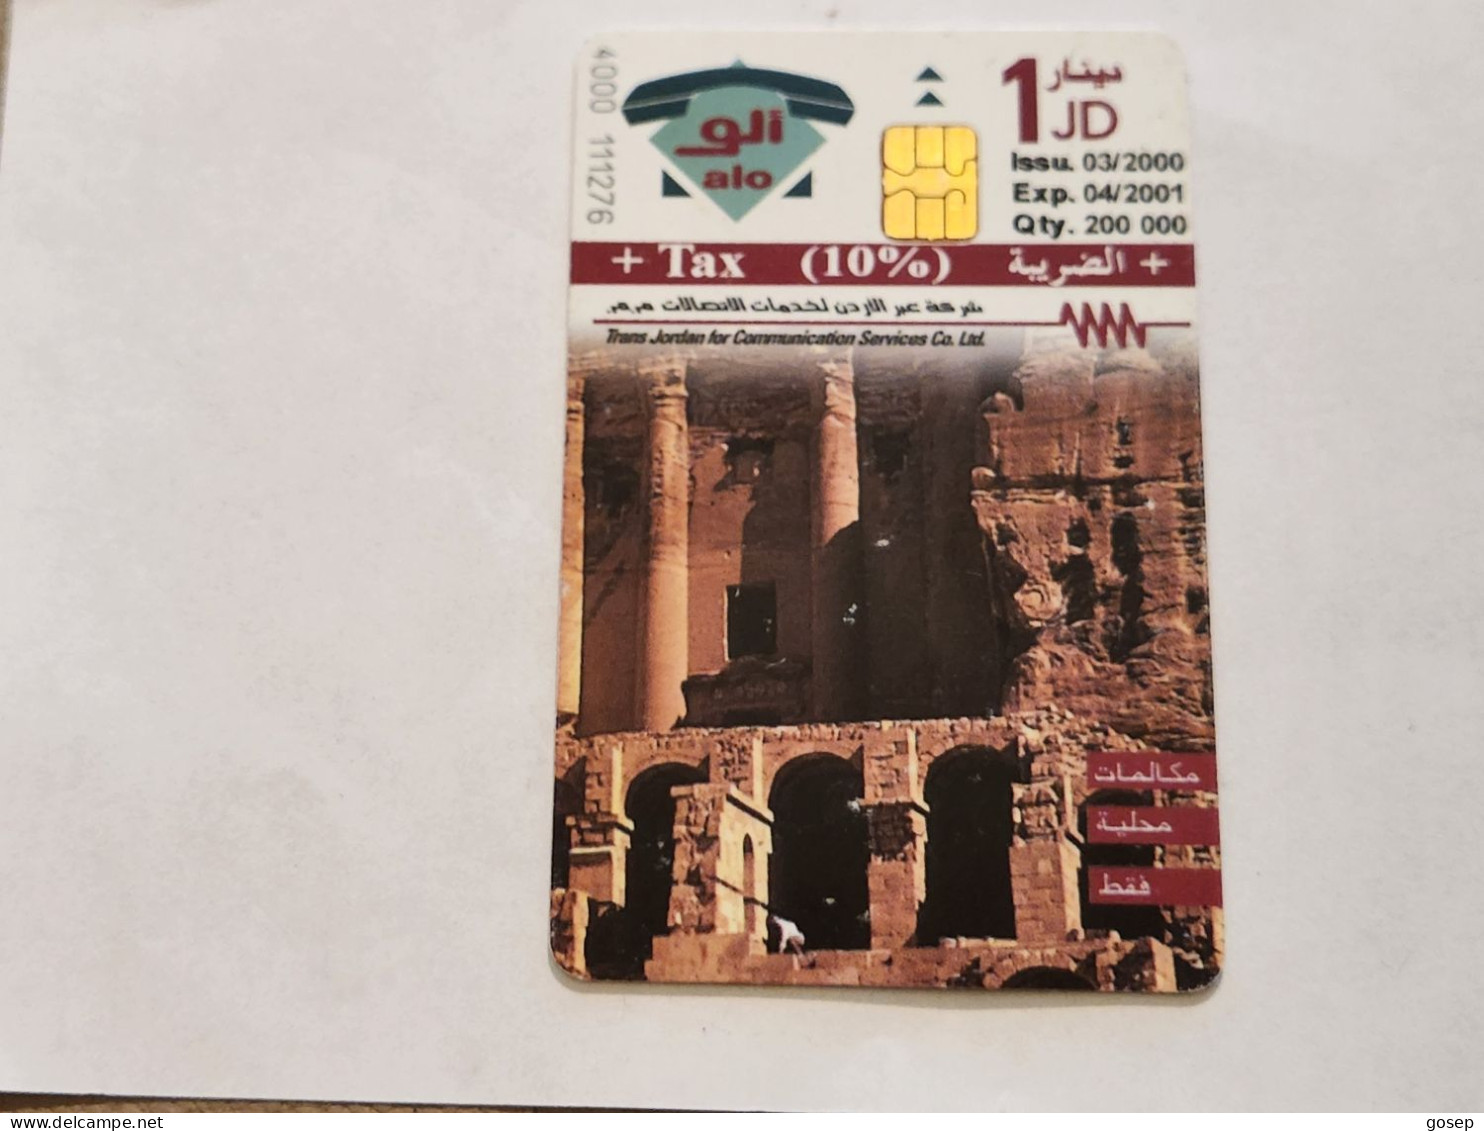 JORDAN-(JO-ALO-0078)-Petra-The Rose City4-(198)-(4000-111276)-(1JD)-(04/2001)-used Card+1card Prepiad Free - Jordan